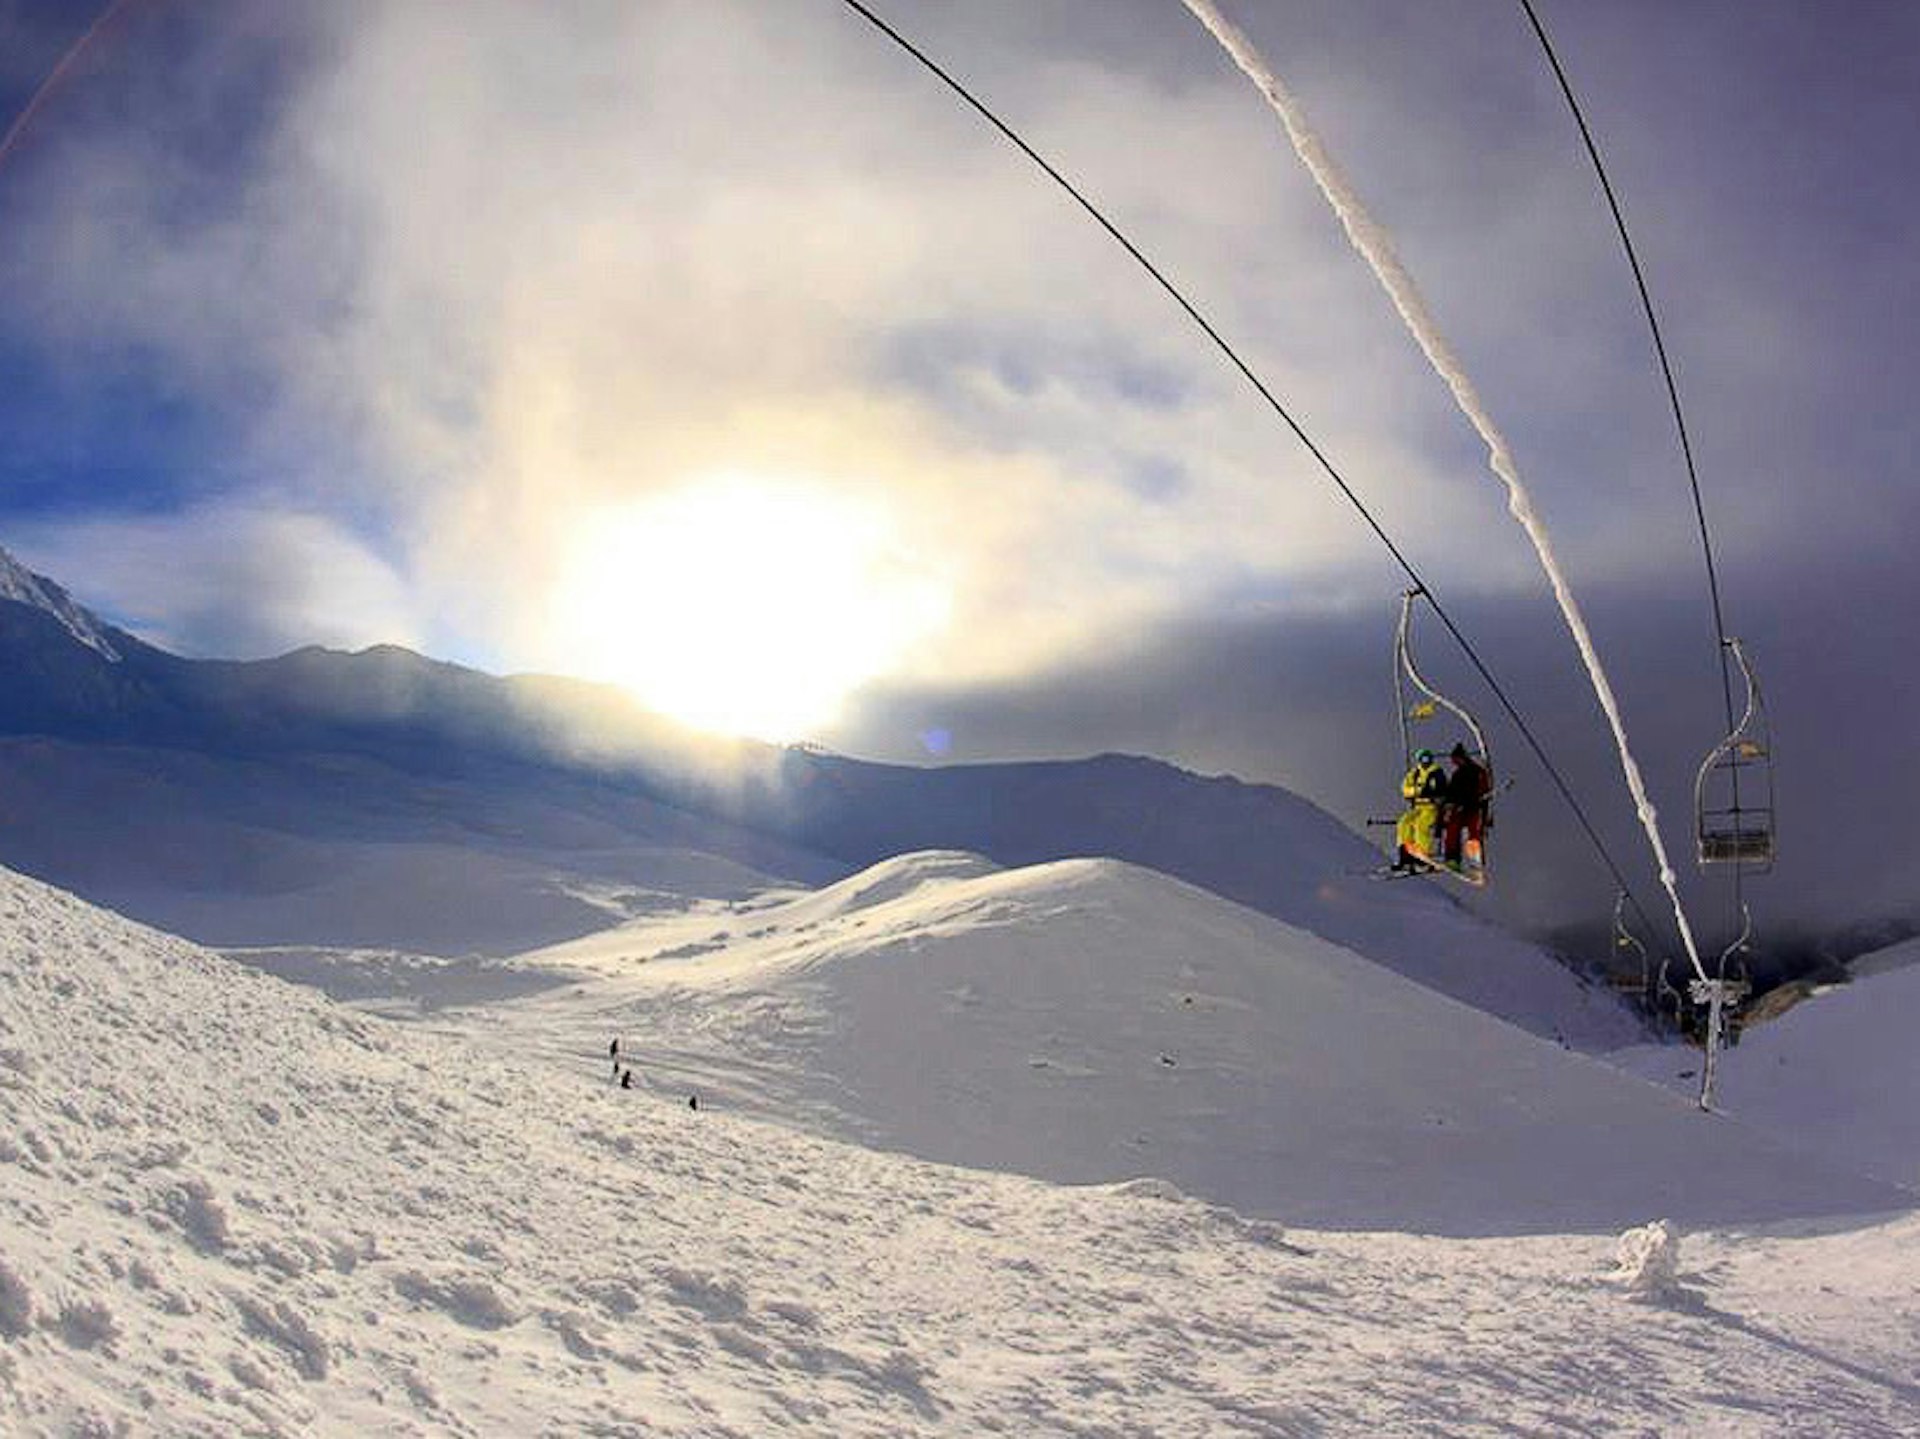 Skiing at Kosovo's Brezovica resort in the Sharr (Šar) Mountains © courtesy of Brezovica ski resort